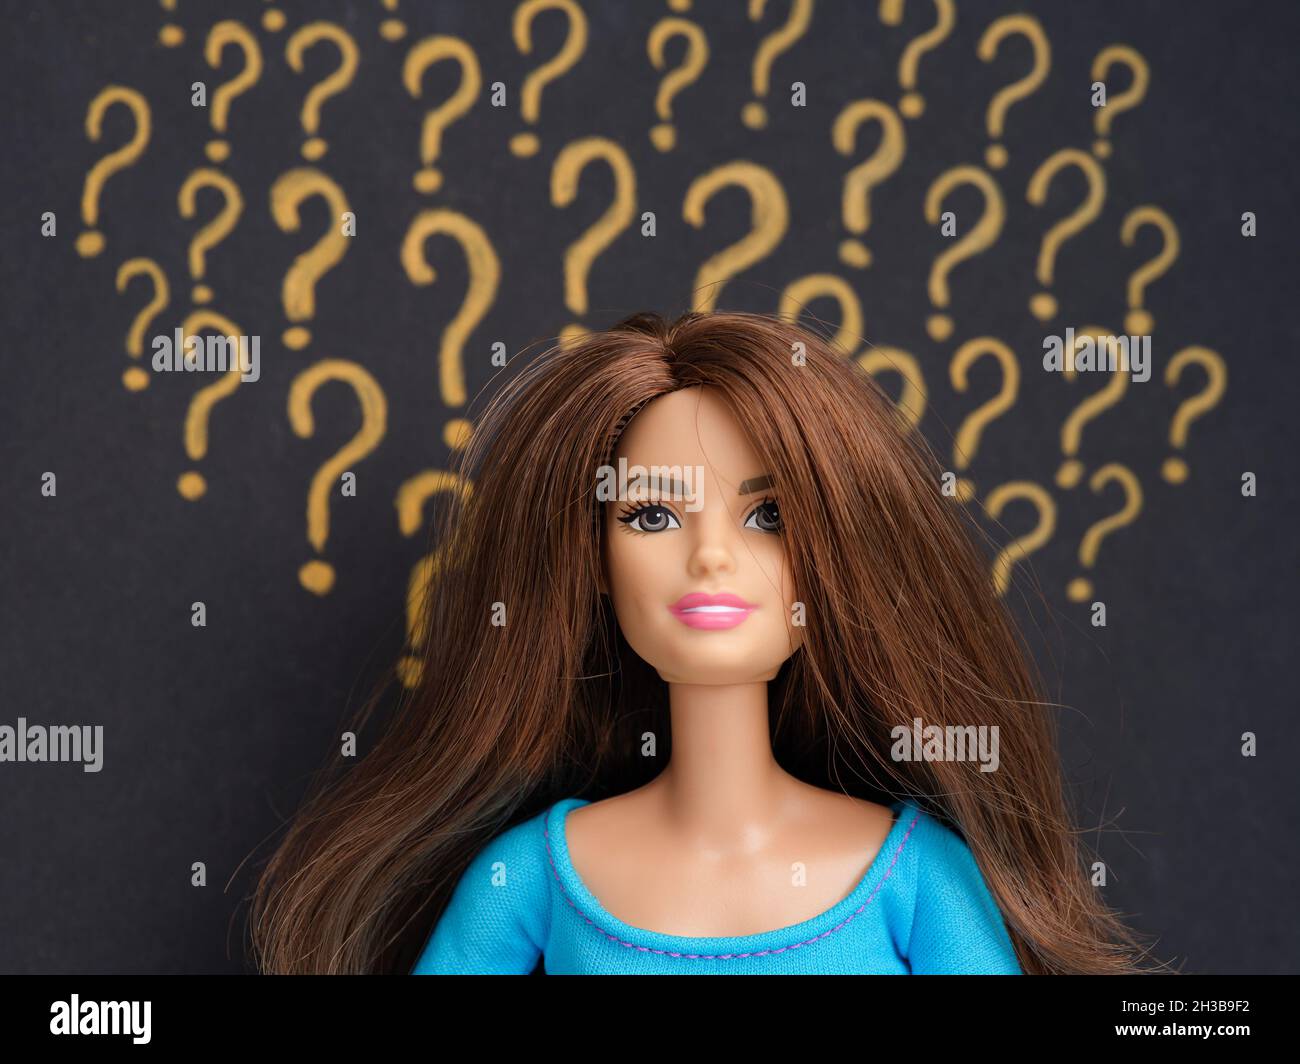 Tambov, Fédération de Russie - 26 octobre 2021 Portrait d'une poupée Barbie aux cheveux bruns sur fond de point d'interrogation. Banque D'Images